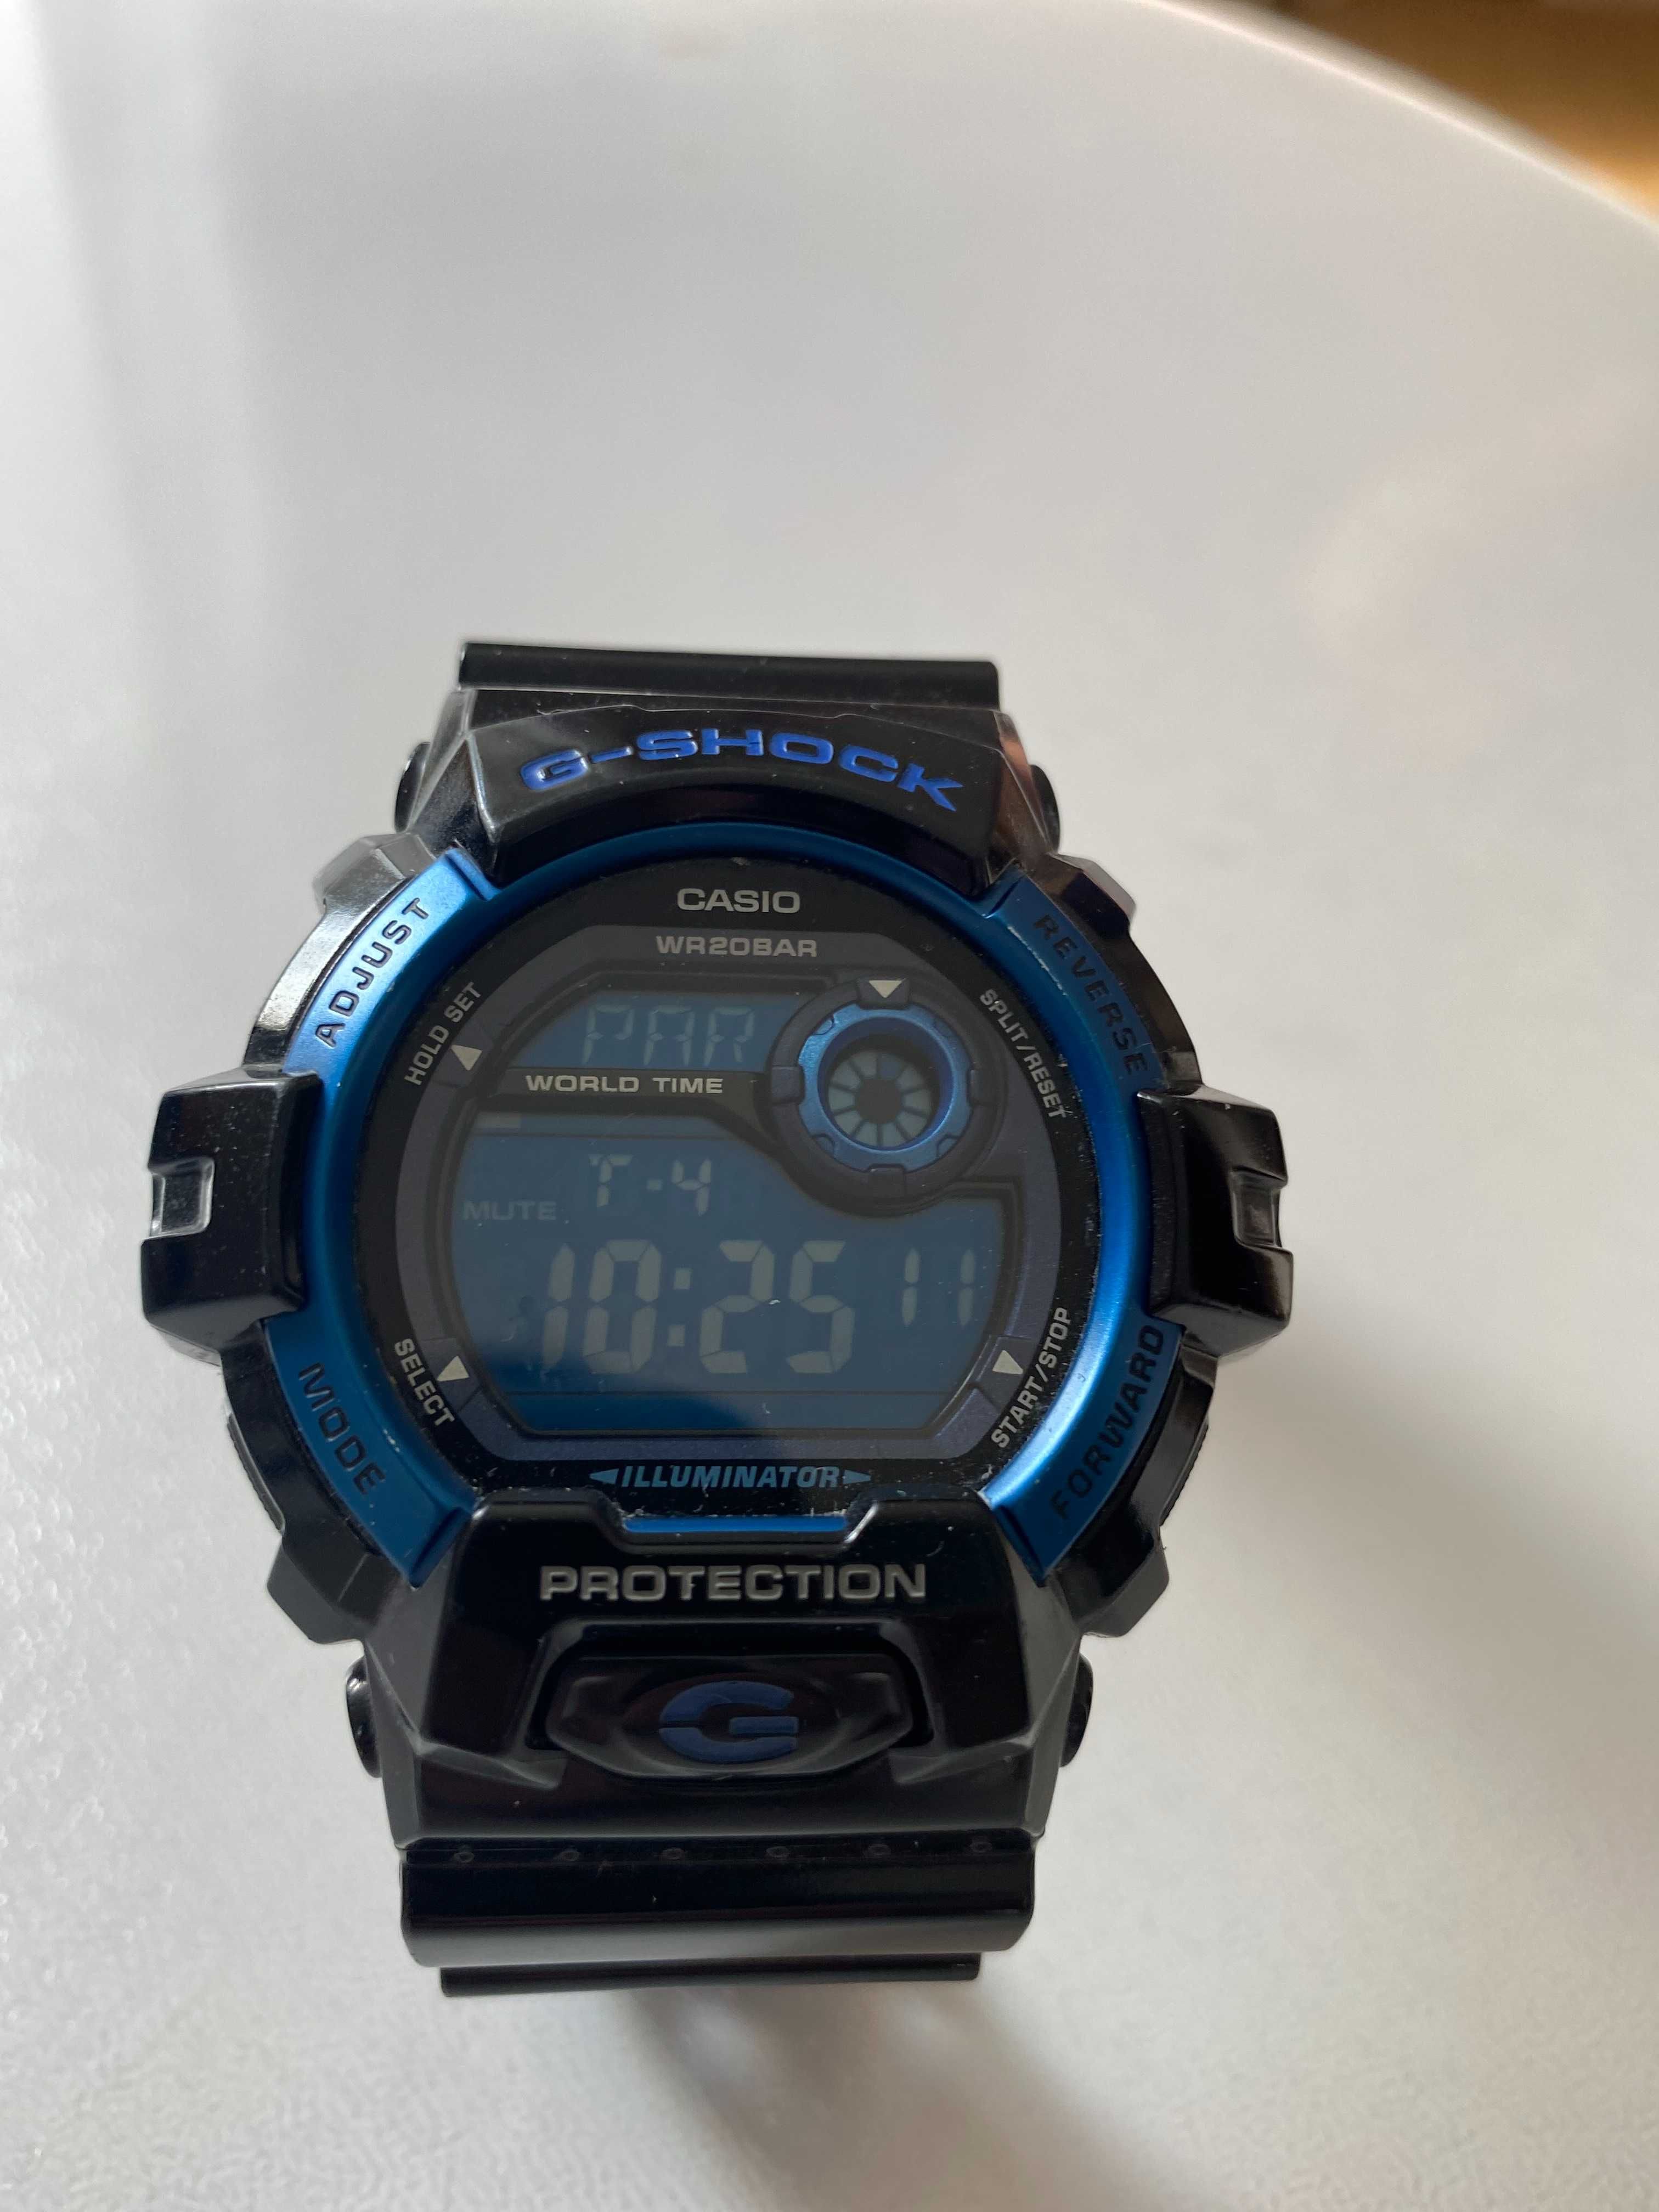 Мужские часы Casio G-8900A - 1ER G-Shock